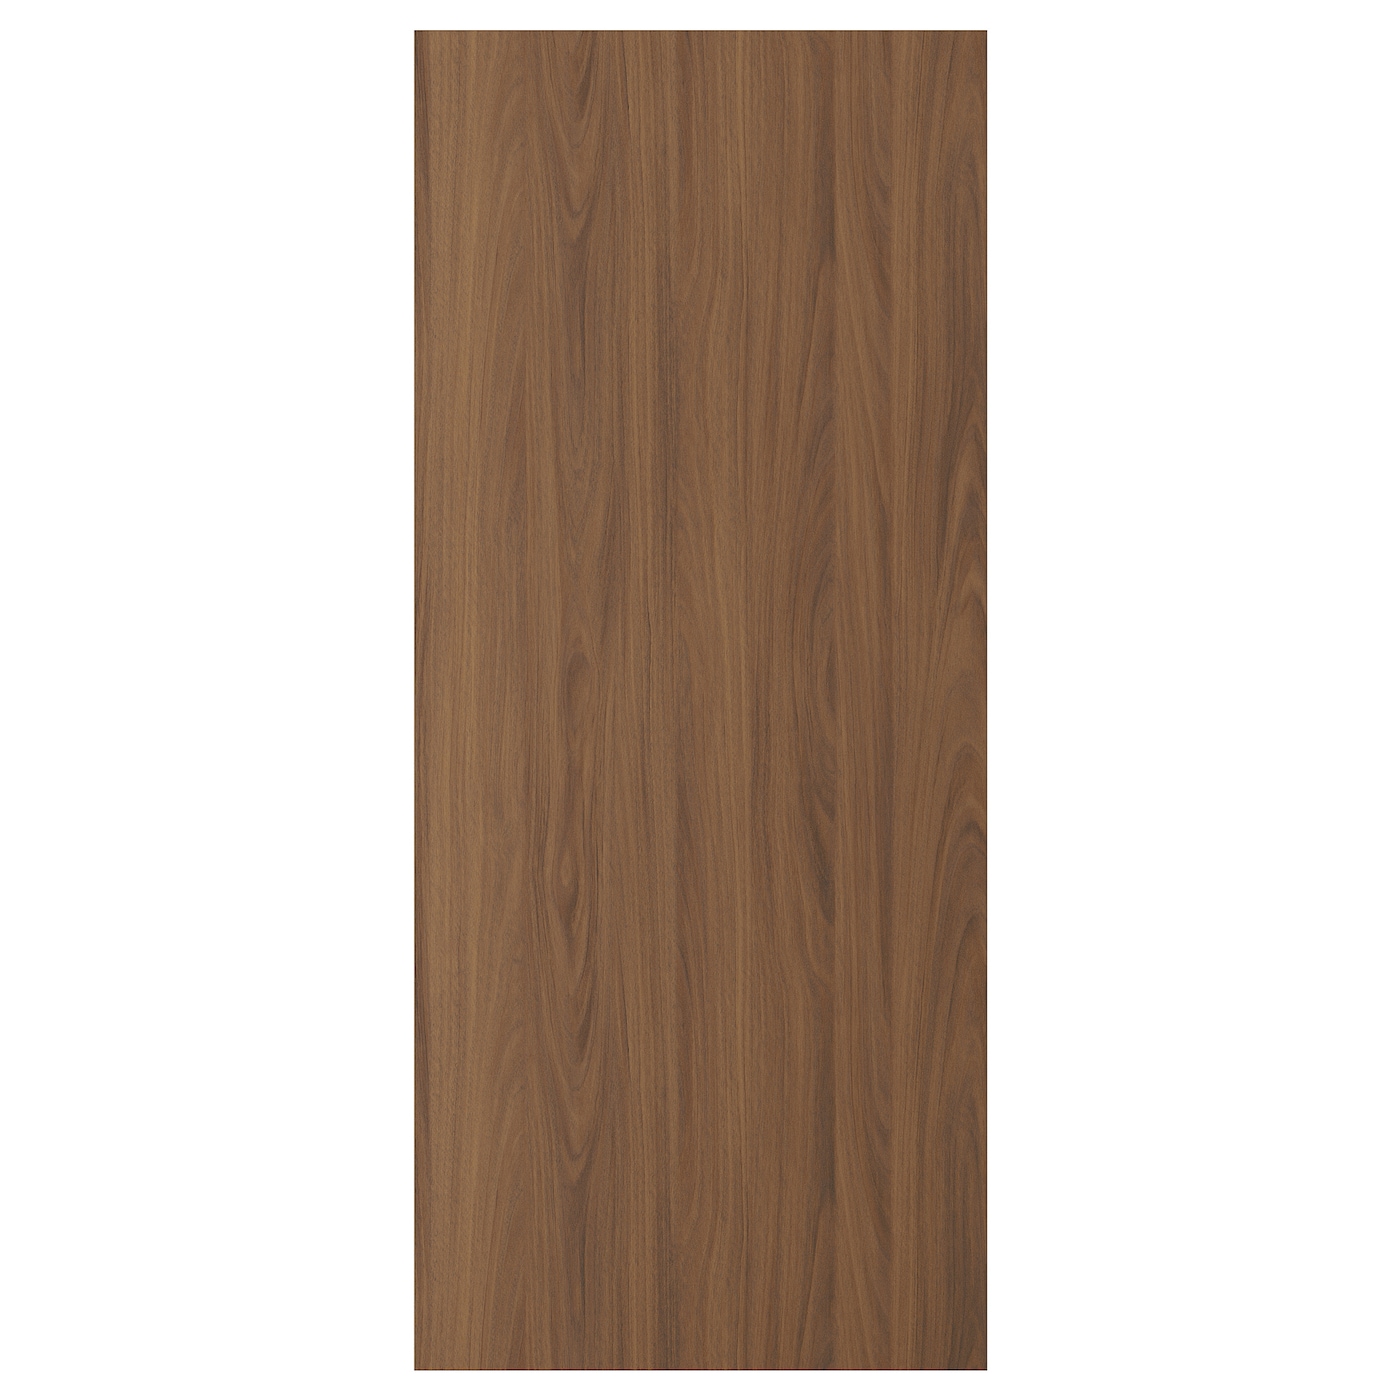 Дверца  - TISTORP IKEA/ ТИСТОРП ИКЕА,  140х60 см, коричневый